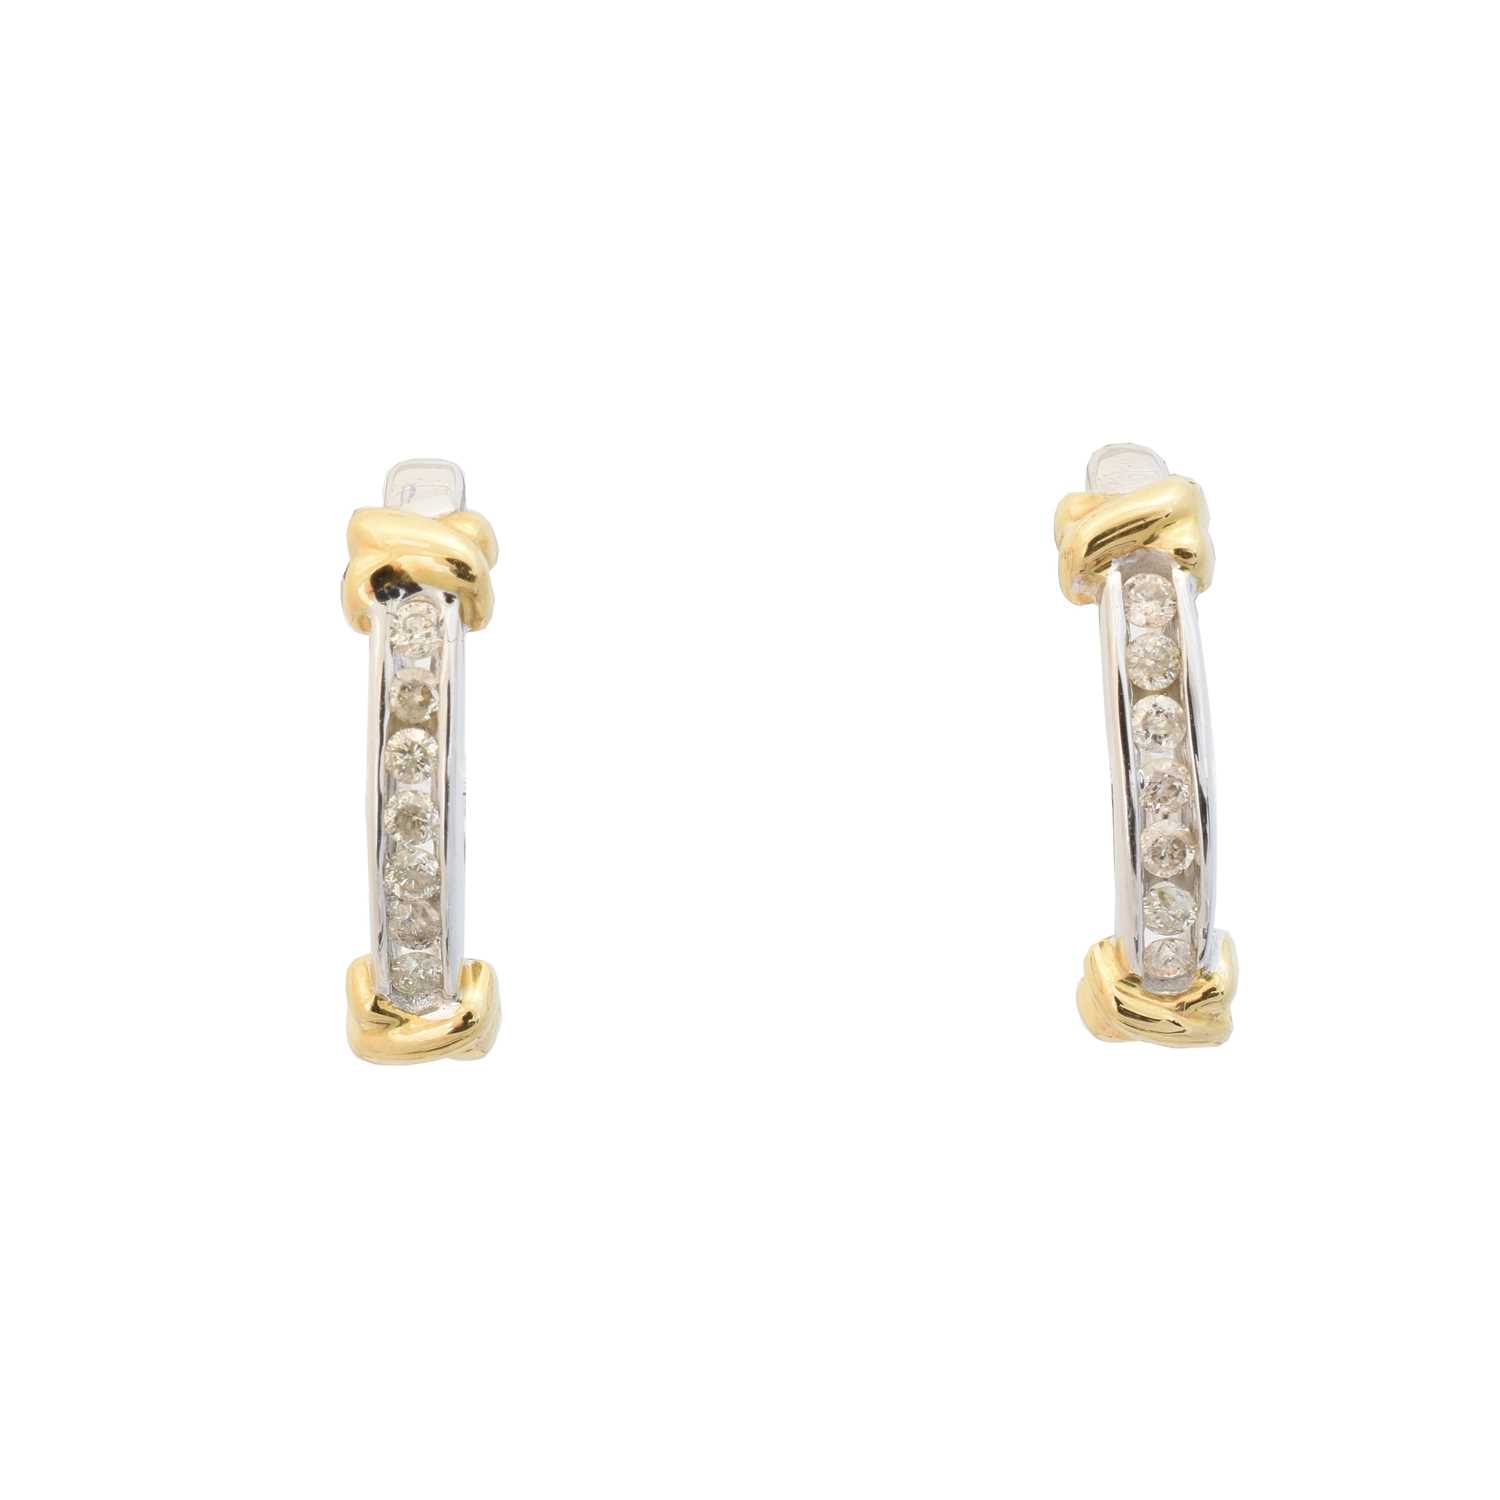 A pair of diamond hoop earrings,